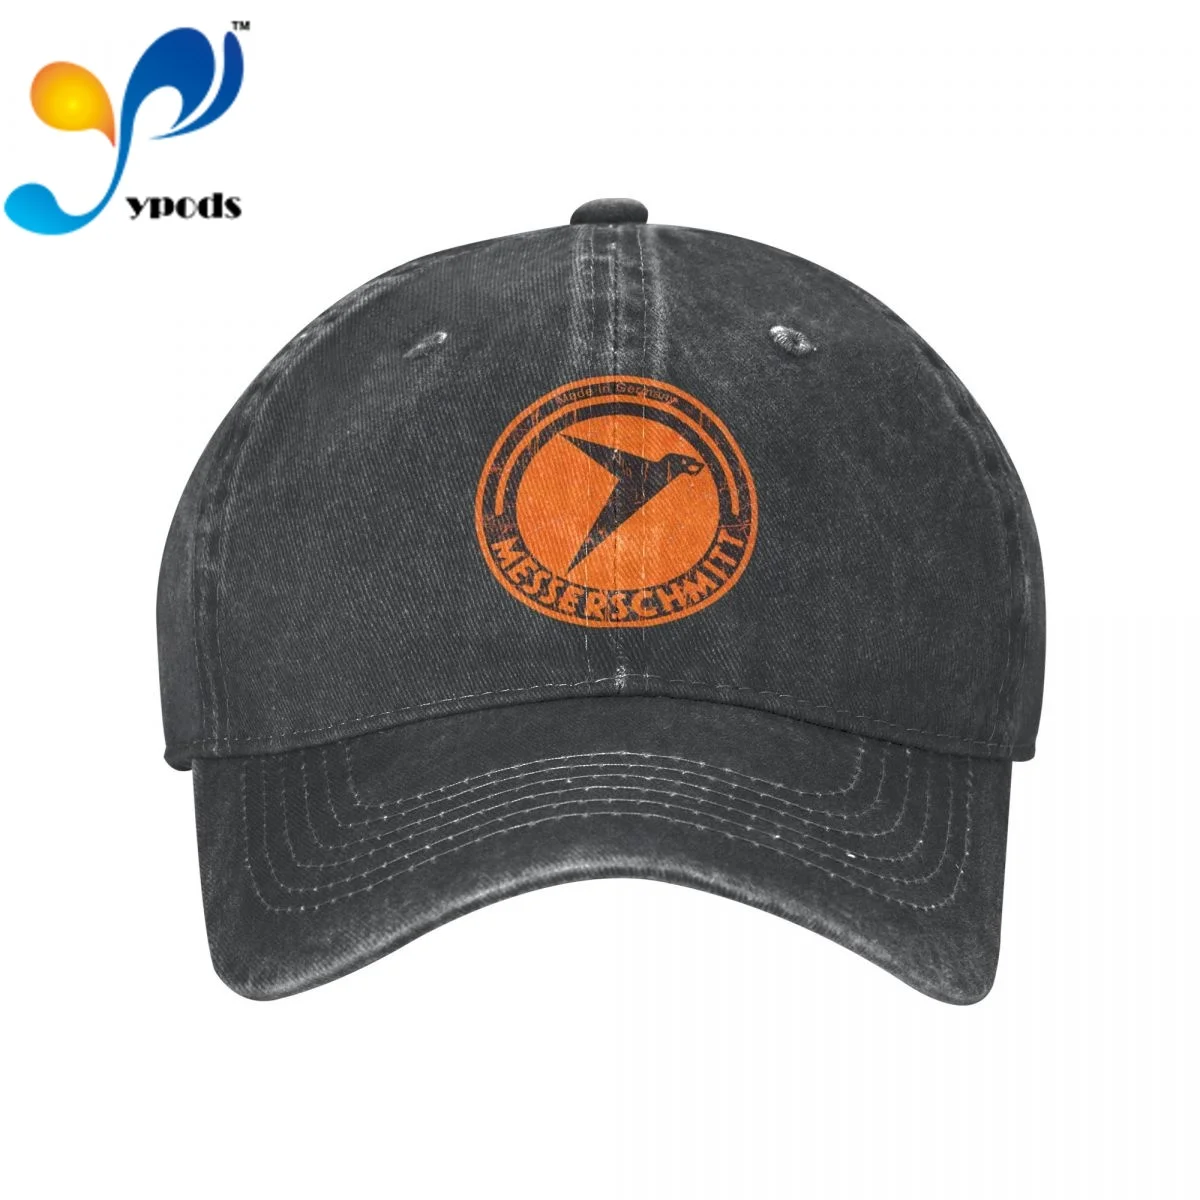 

Messerschmitt German Aircraft Vintage Logo Women Men Cotton Baseball Cap Unisex Casual Caps Outdoor Trucker Snapback Hats